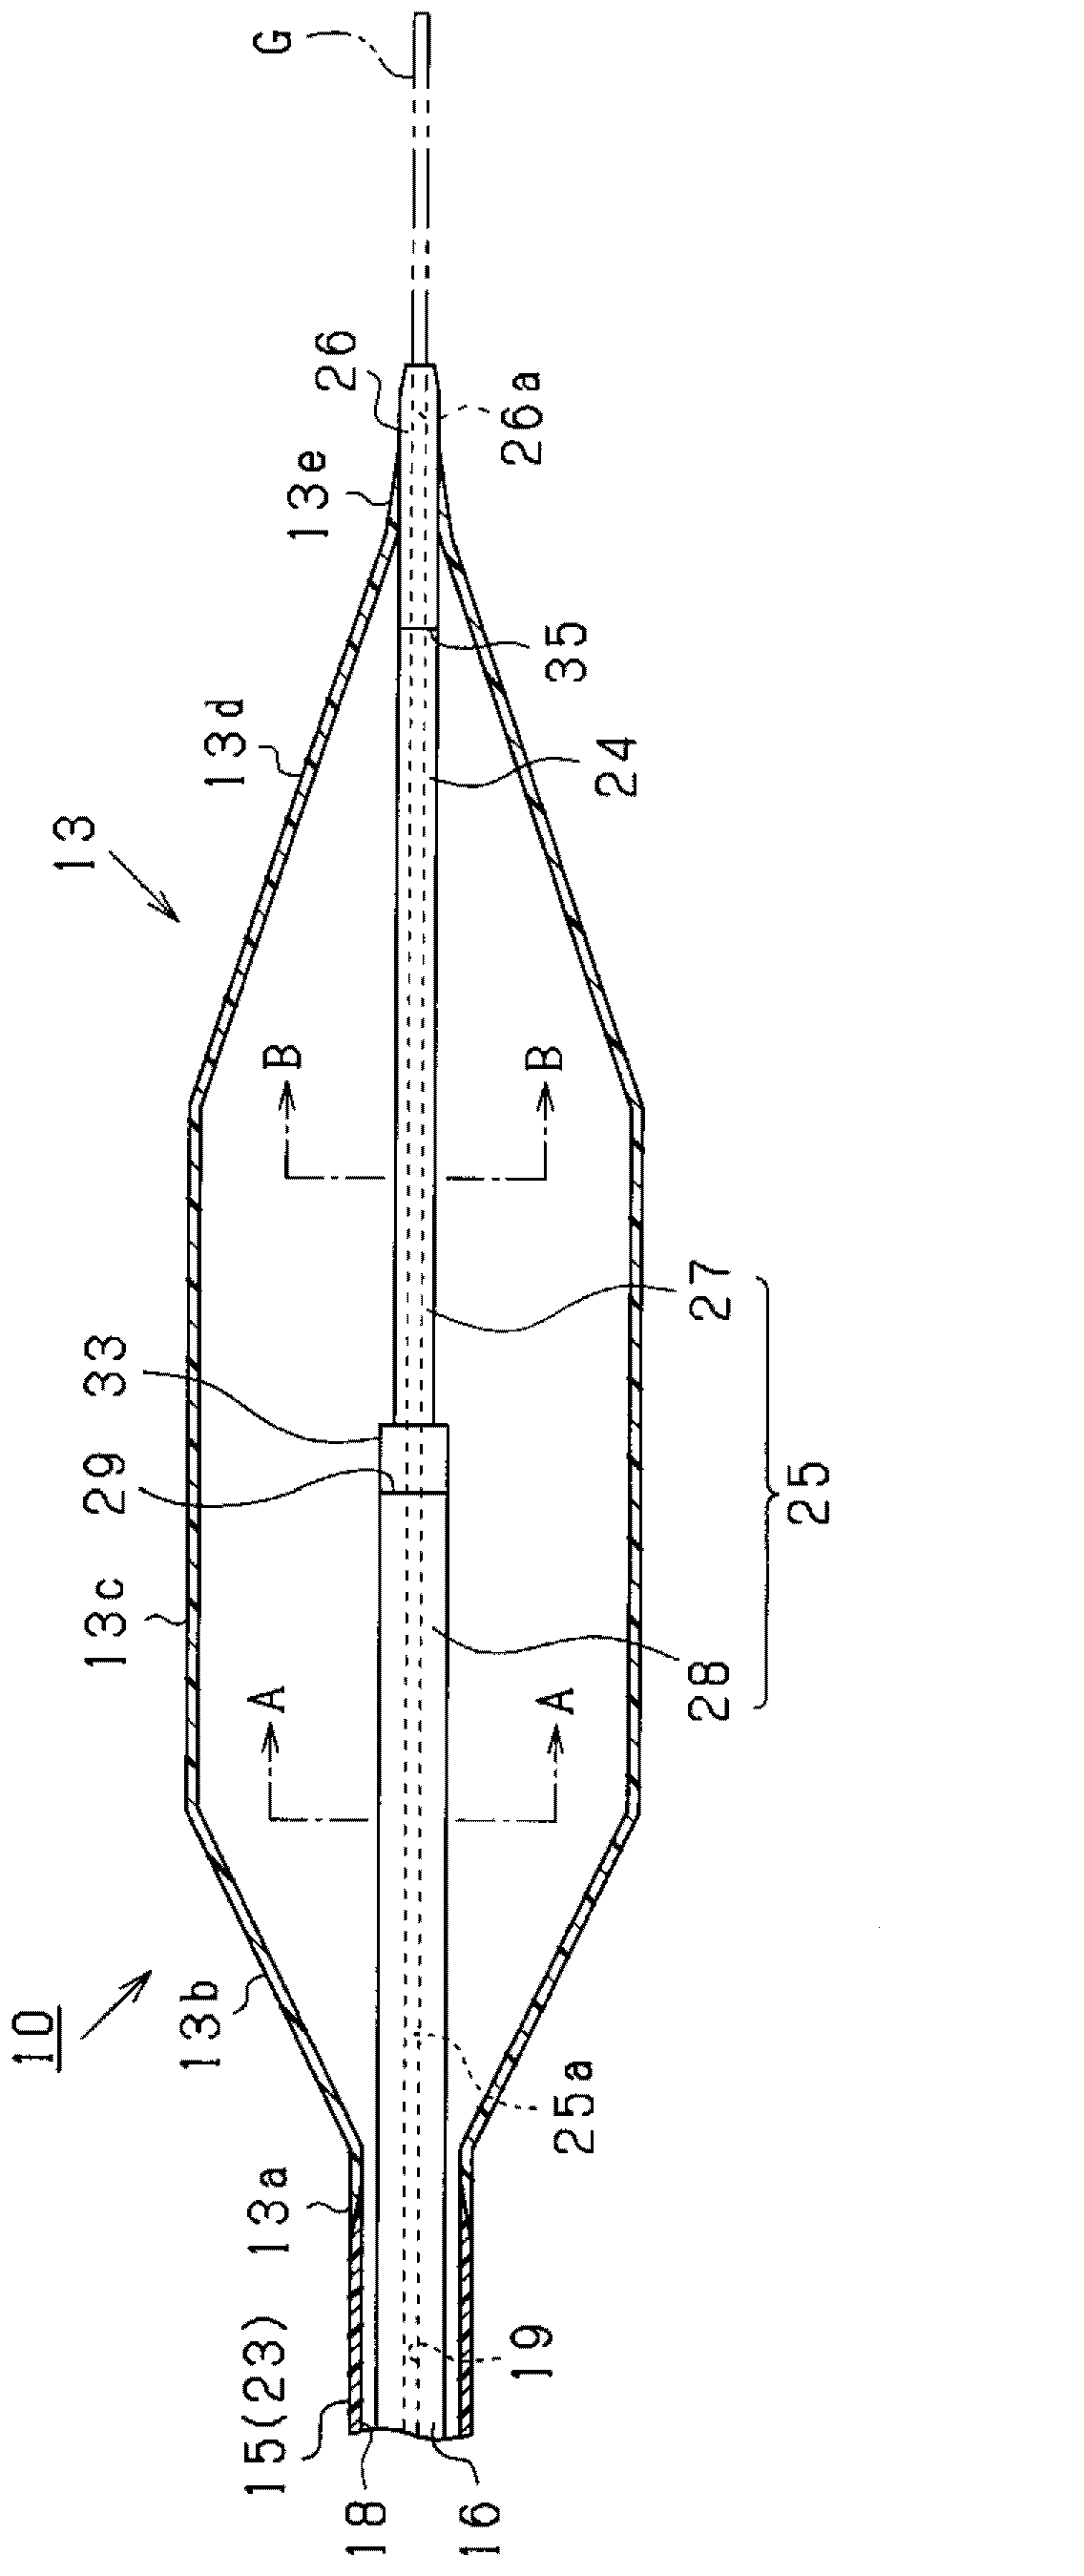 A balloon catheter